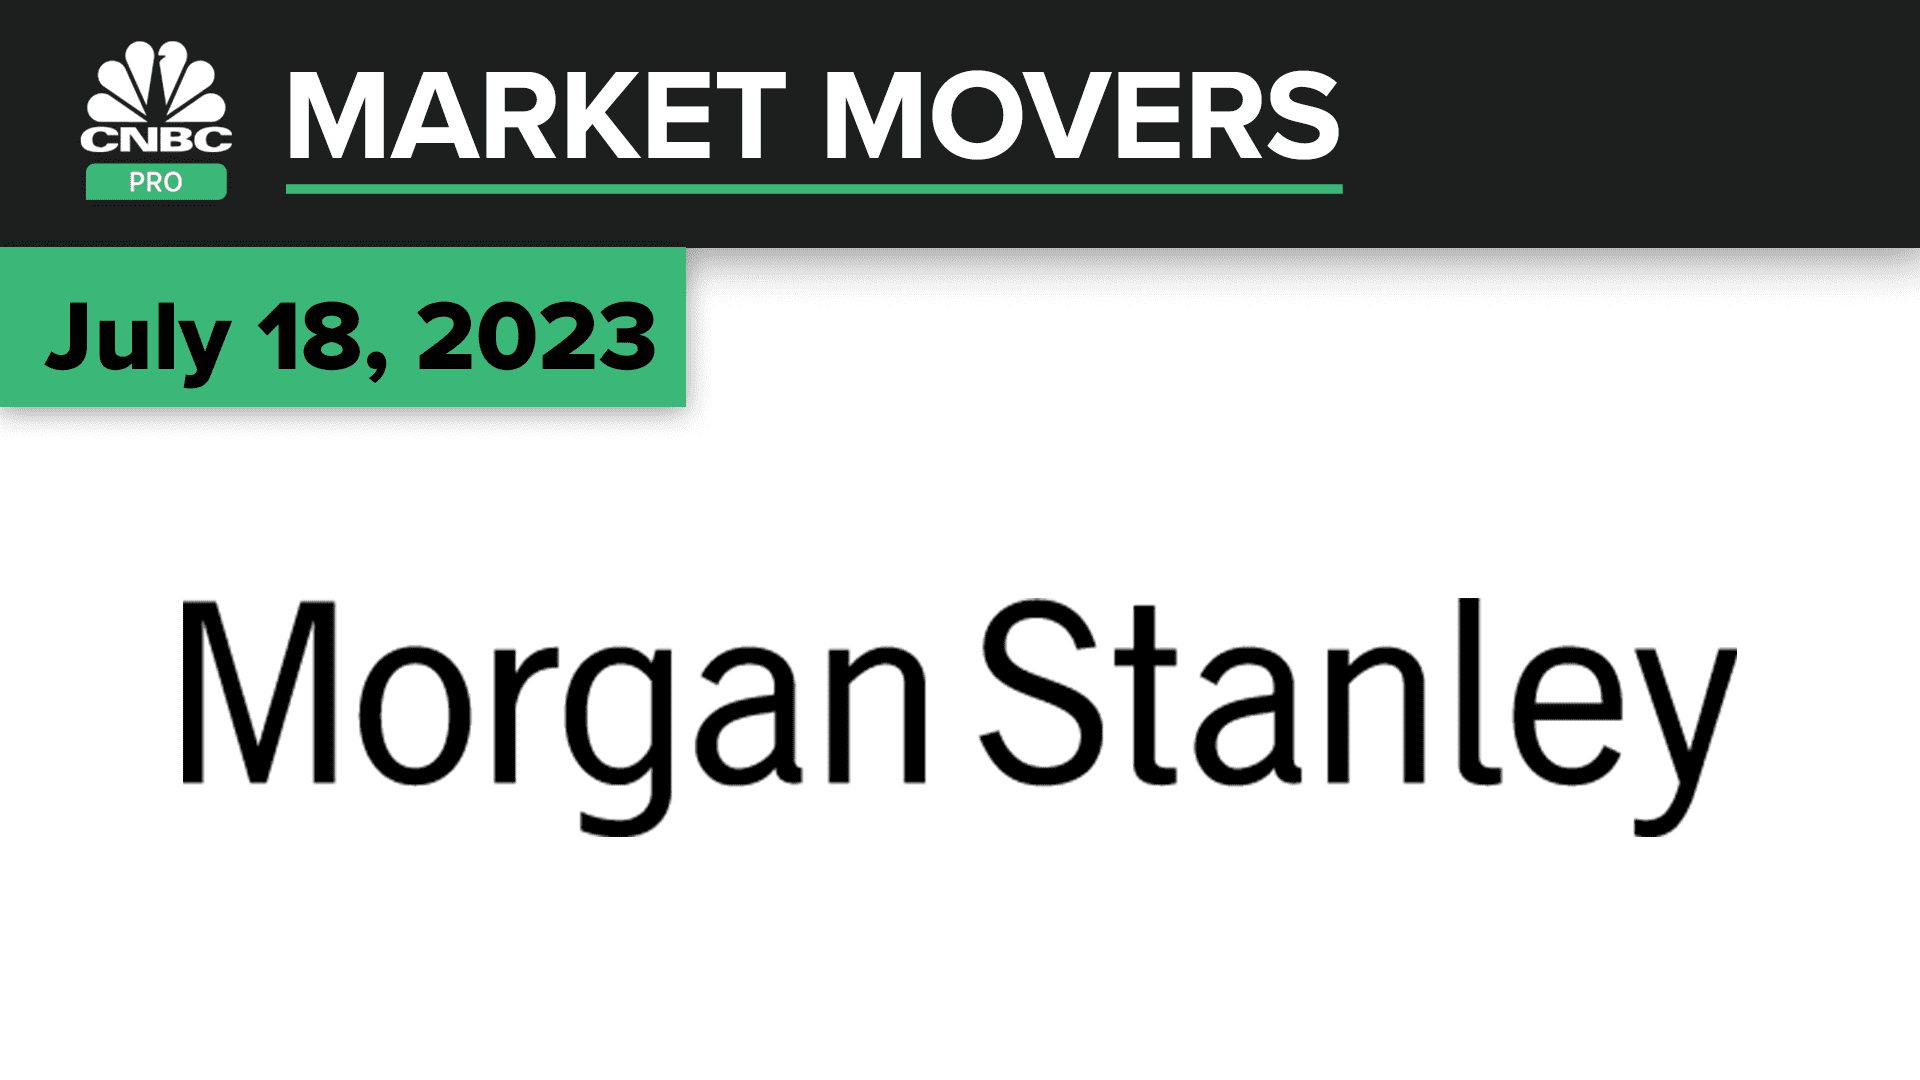 Het aandeel Morgan Stanley stijgt nadat de winst is verslagen.  Dit is wat de profs zeggen